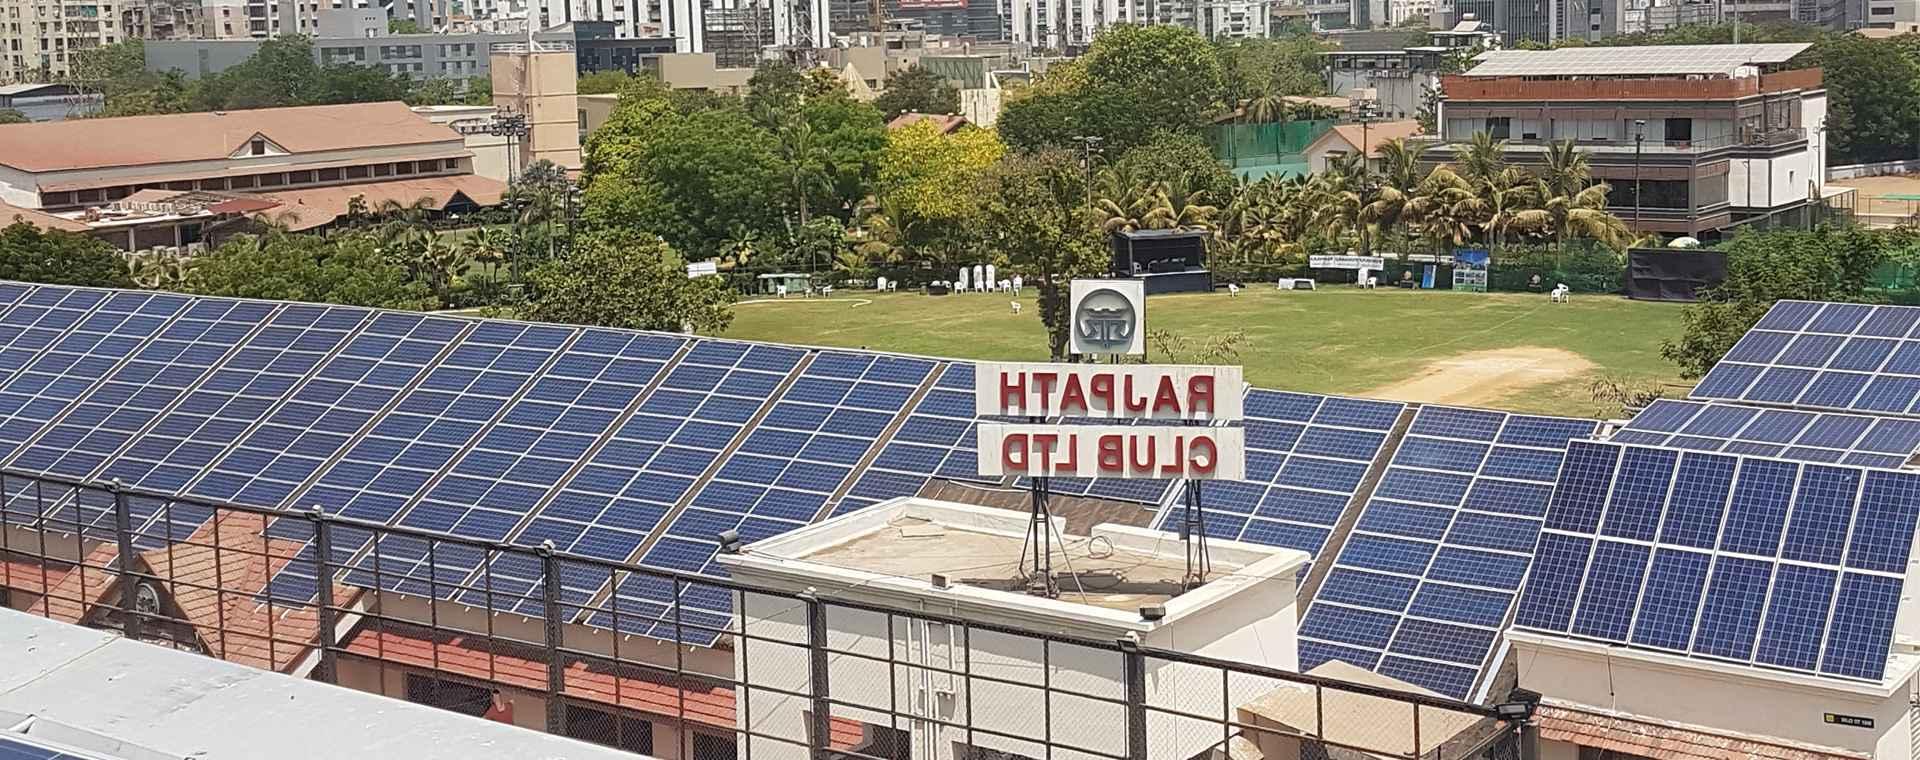 Ahmedabad solar company